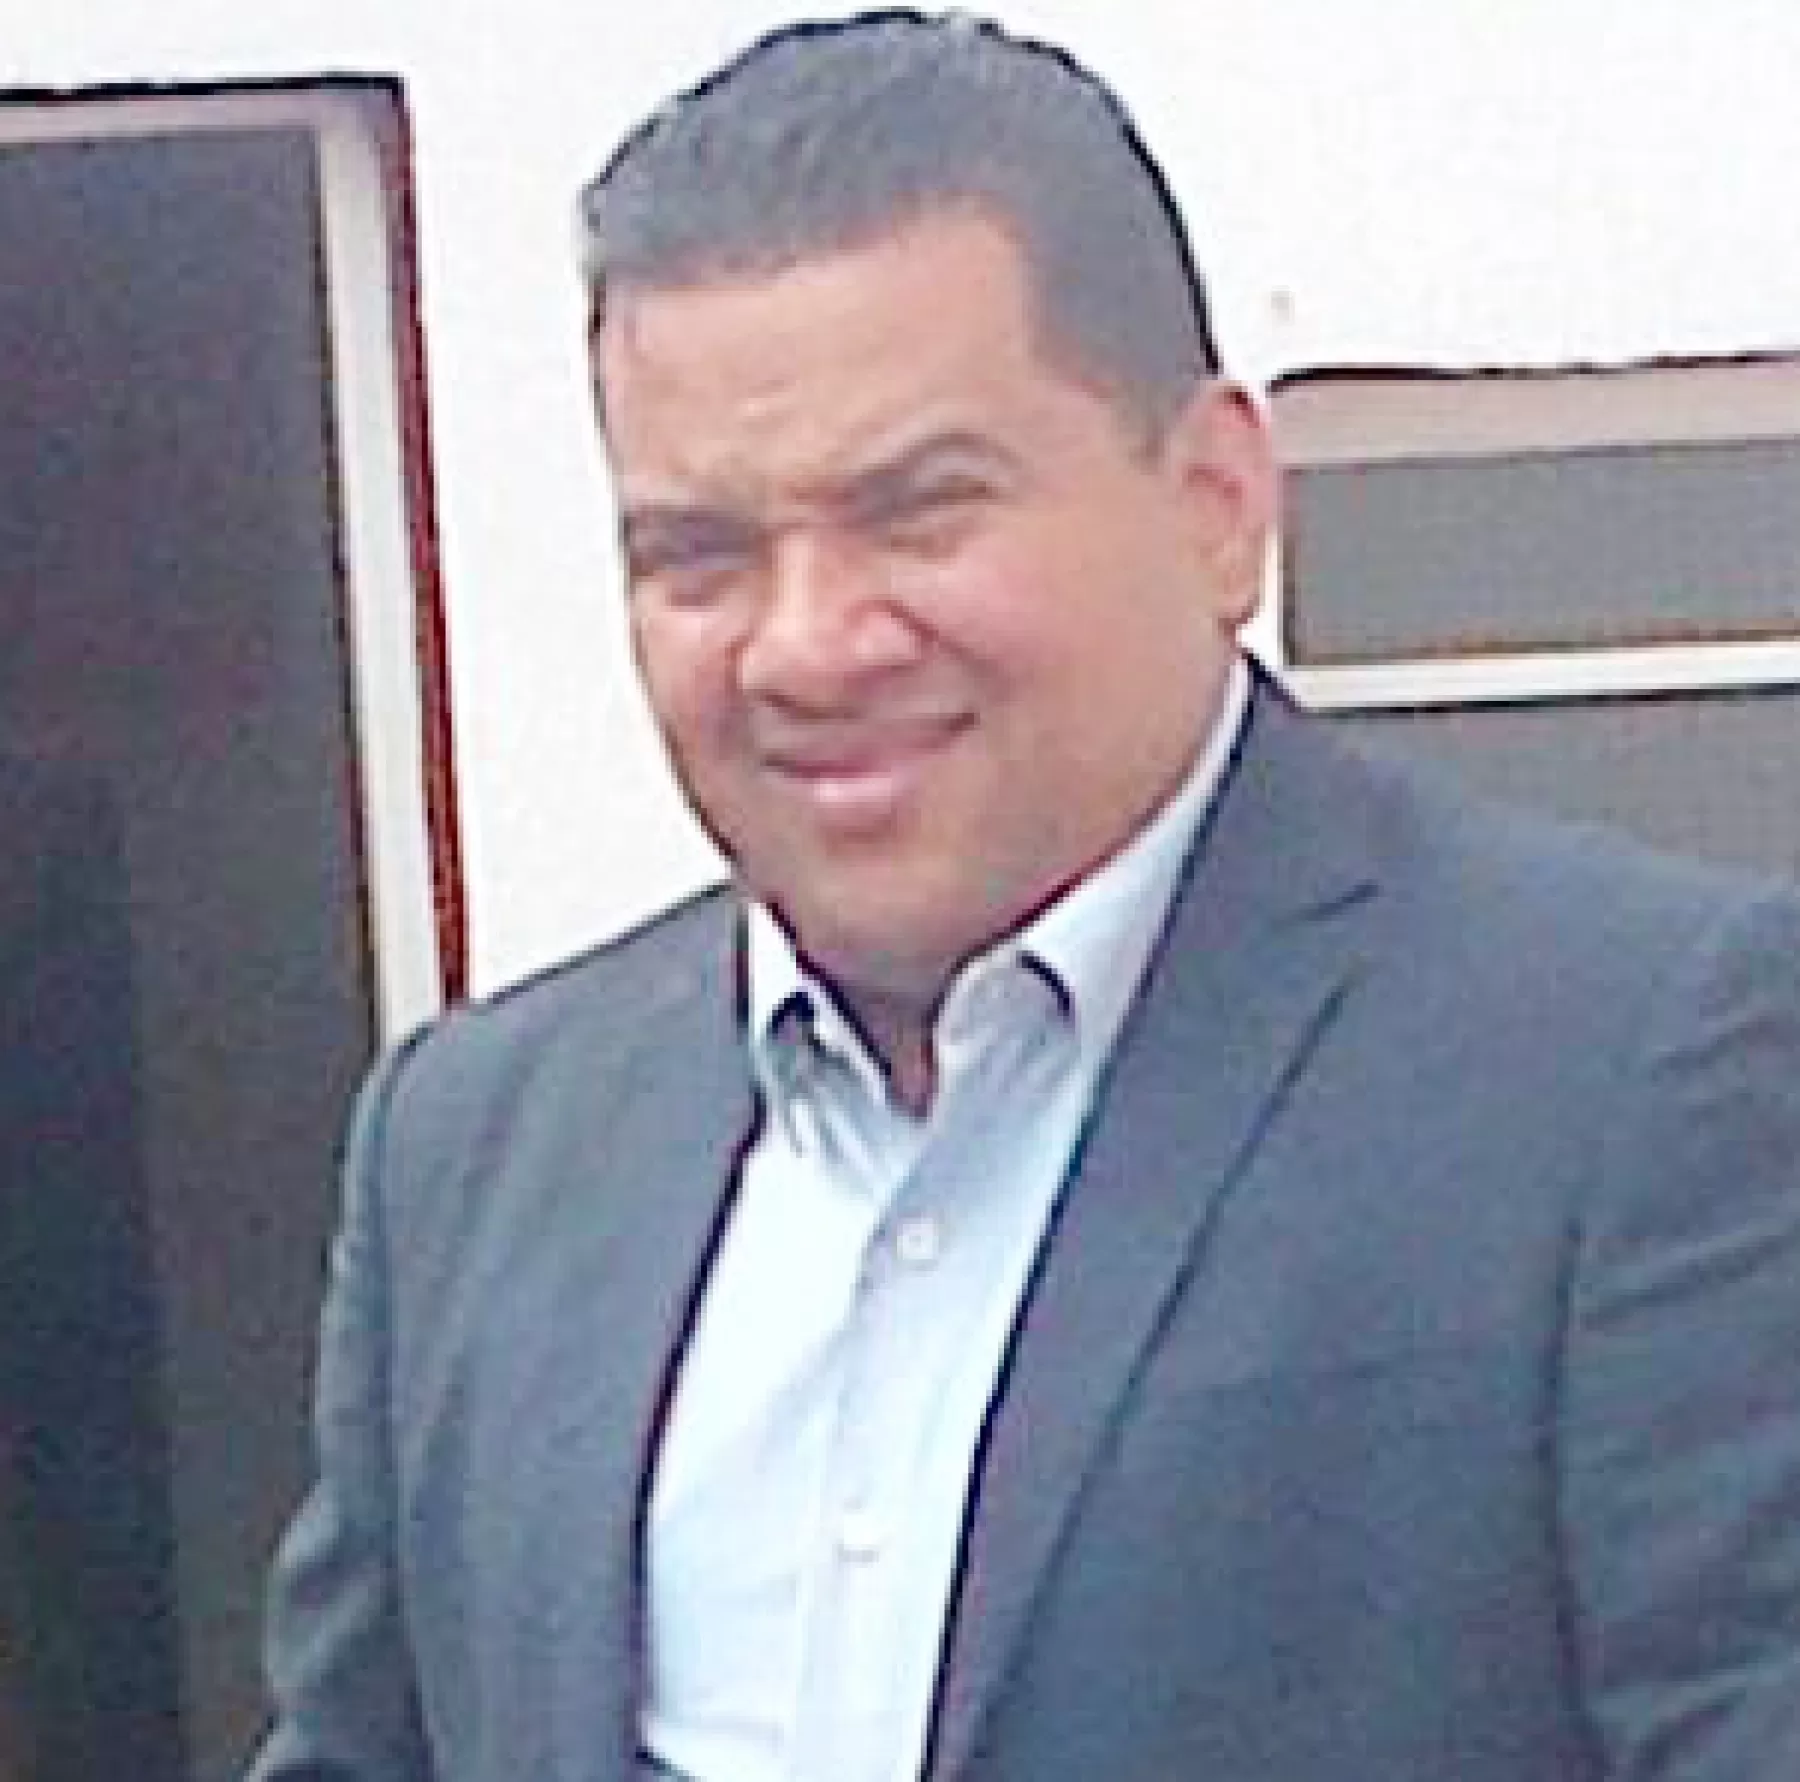 El abogado defensor de los derechos humanos, Francisco Javier Gómez Ayala, fue atacado por desconocidos que lo hirieron con arma blanca en su casa ubicada en el barrio las Corocoras de Arauca.